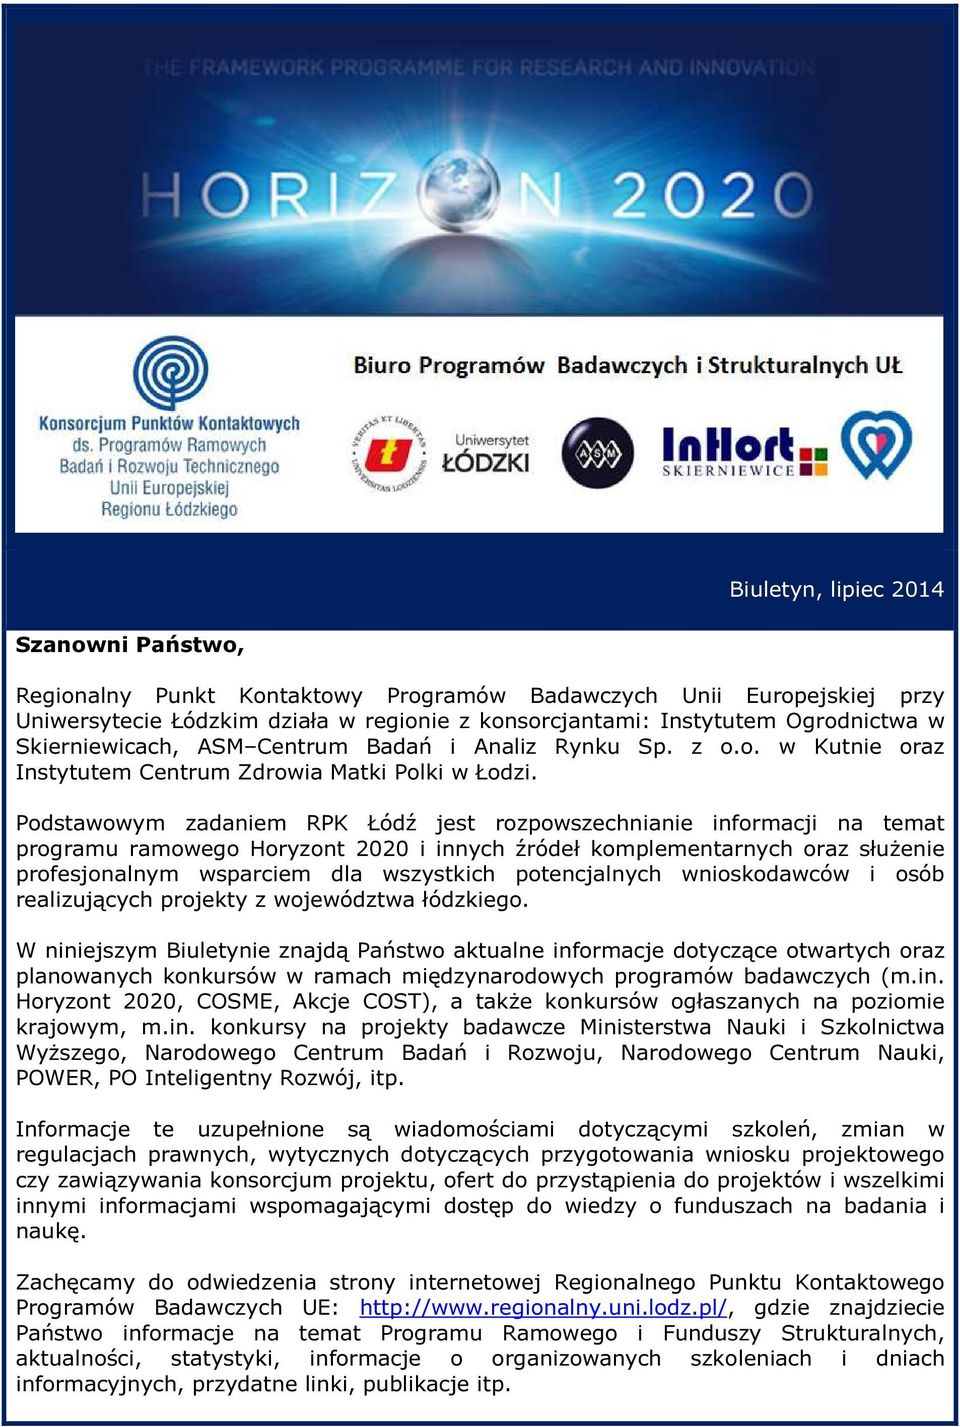 Podstawowym zadaniem RPK Łódź jest rozpowszechnianie informacji na temat programu ramowego Horyzont 2020 i innych źródeł komplementarnych oraz służenie profesjonalnym wsparciem dla wszystkich